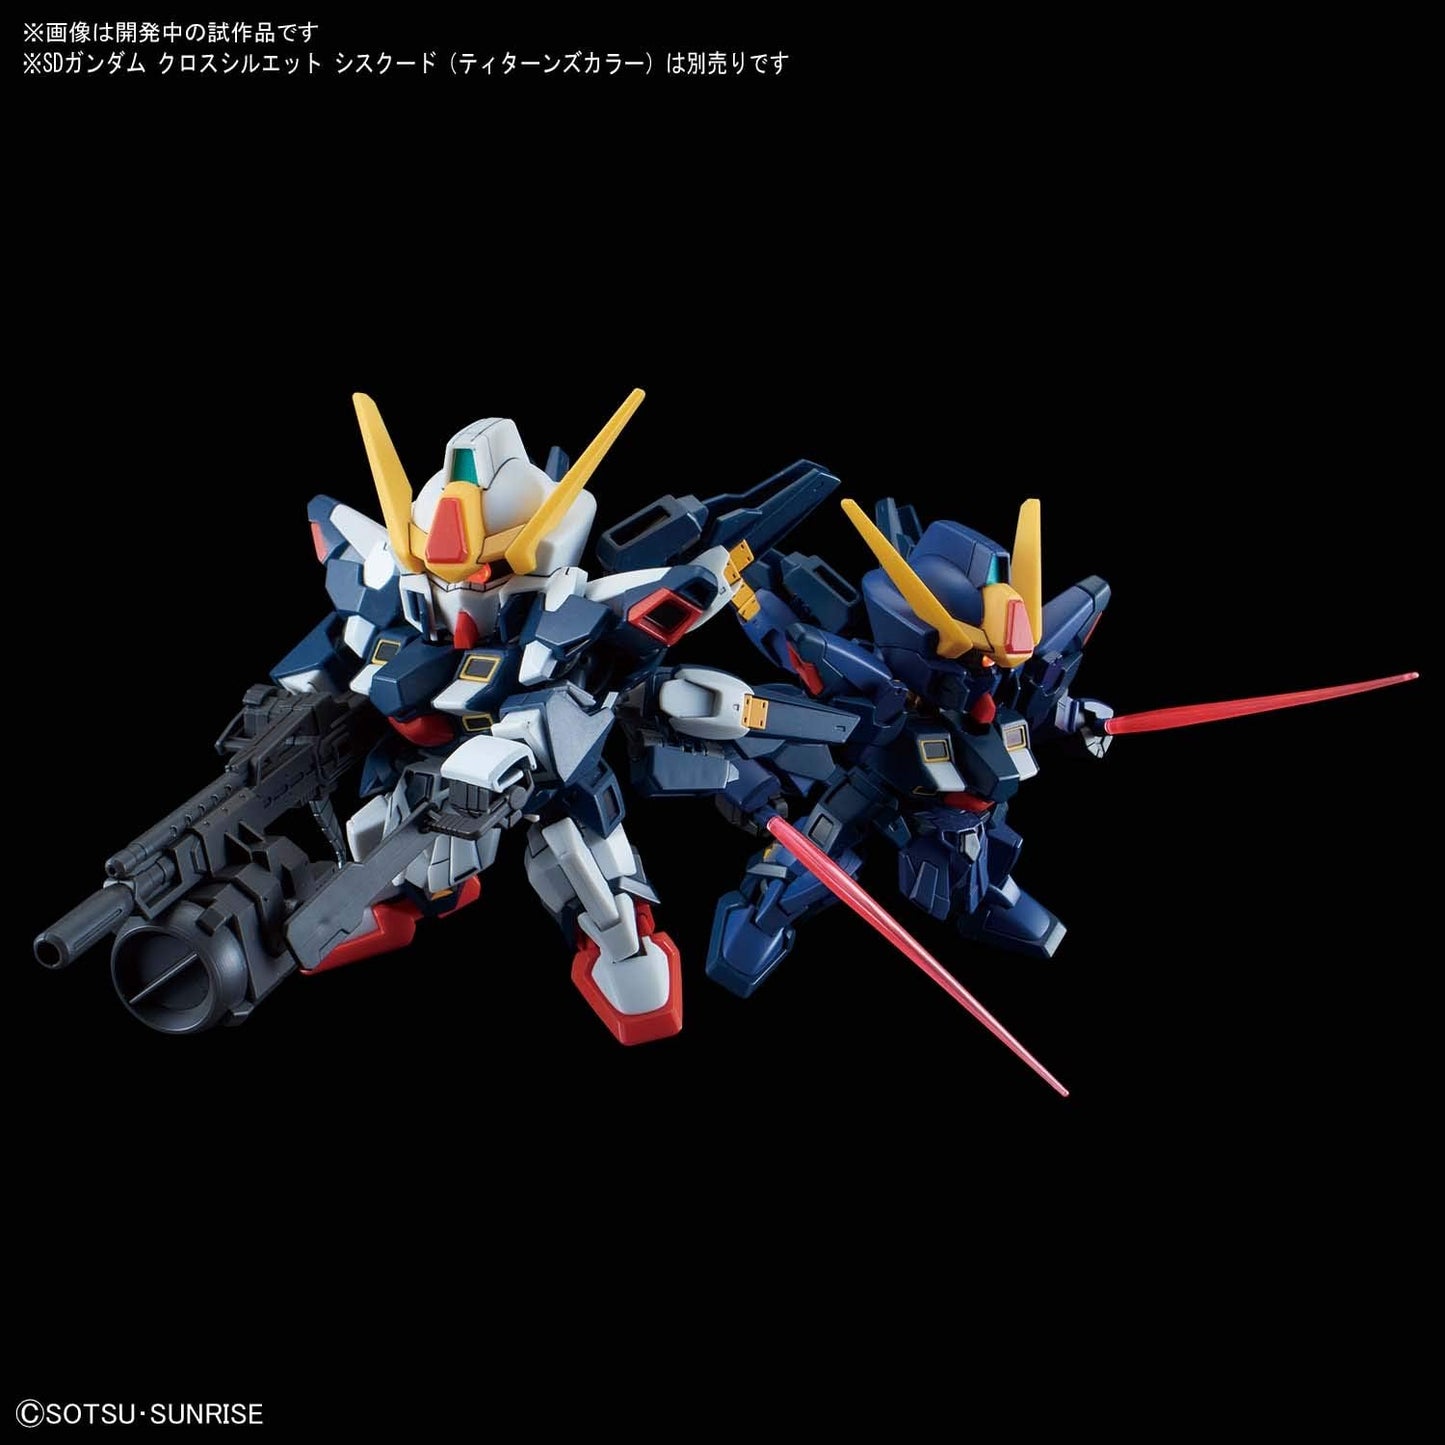 SD Gundam Cross Silhouette SDCS "SD Gundam G-Generation Monoai Gundams" Sisquiede | animota